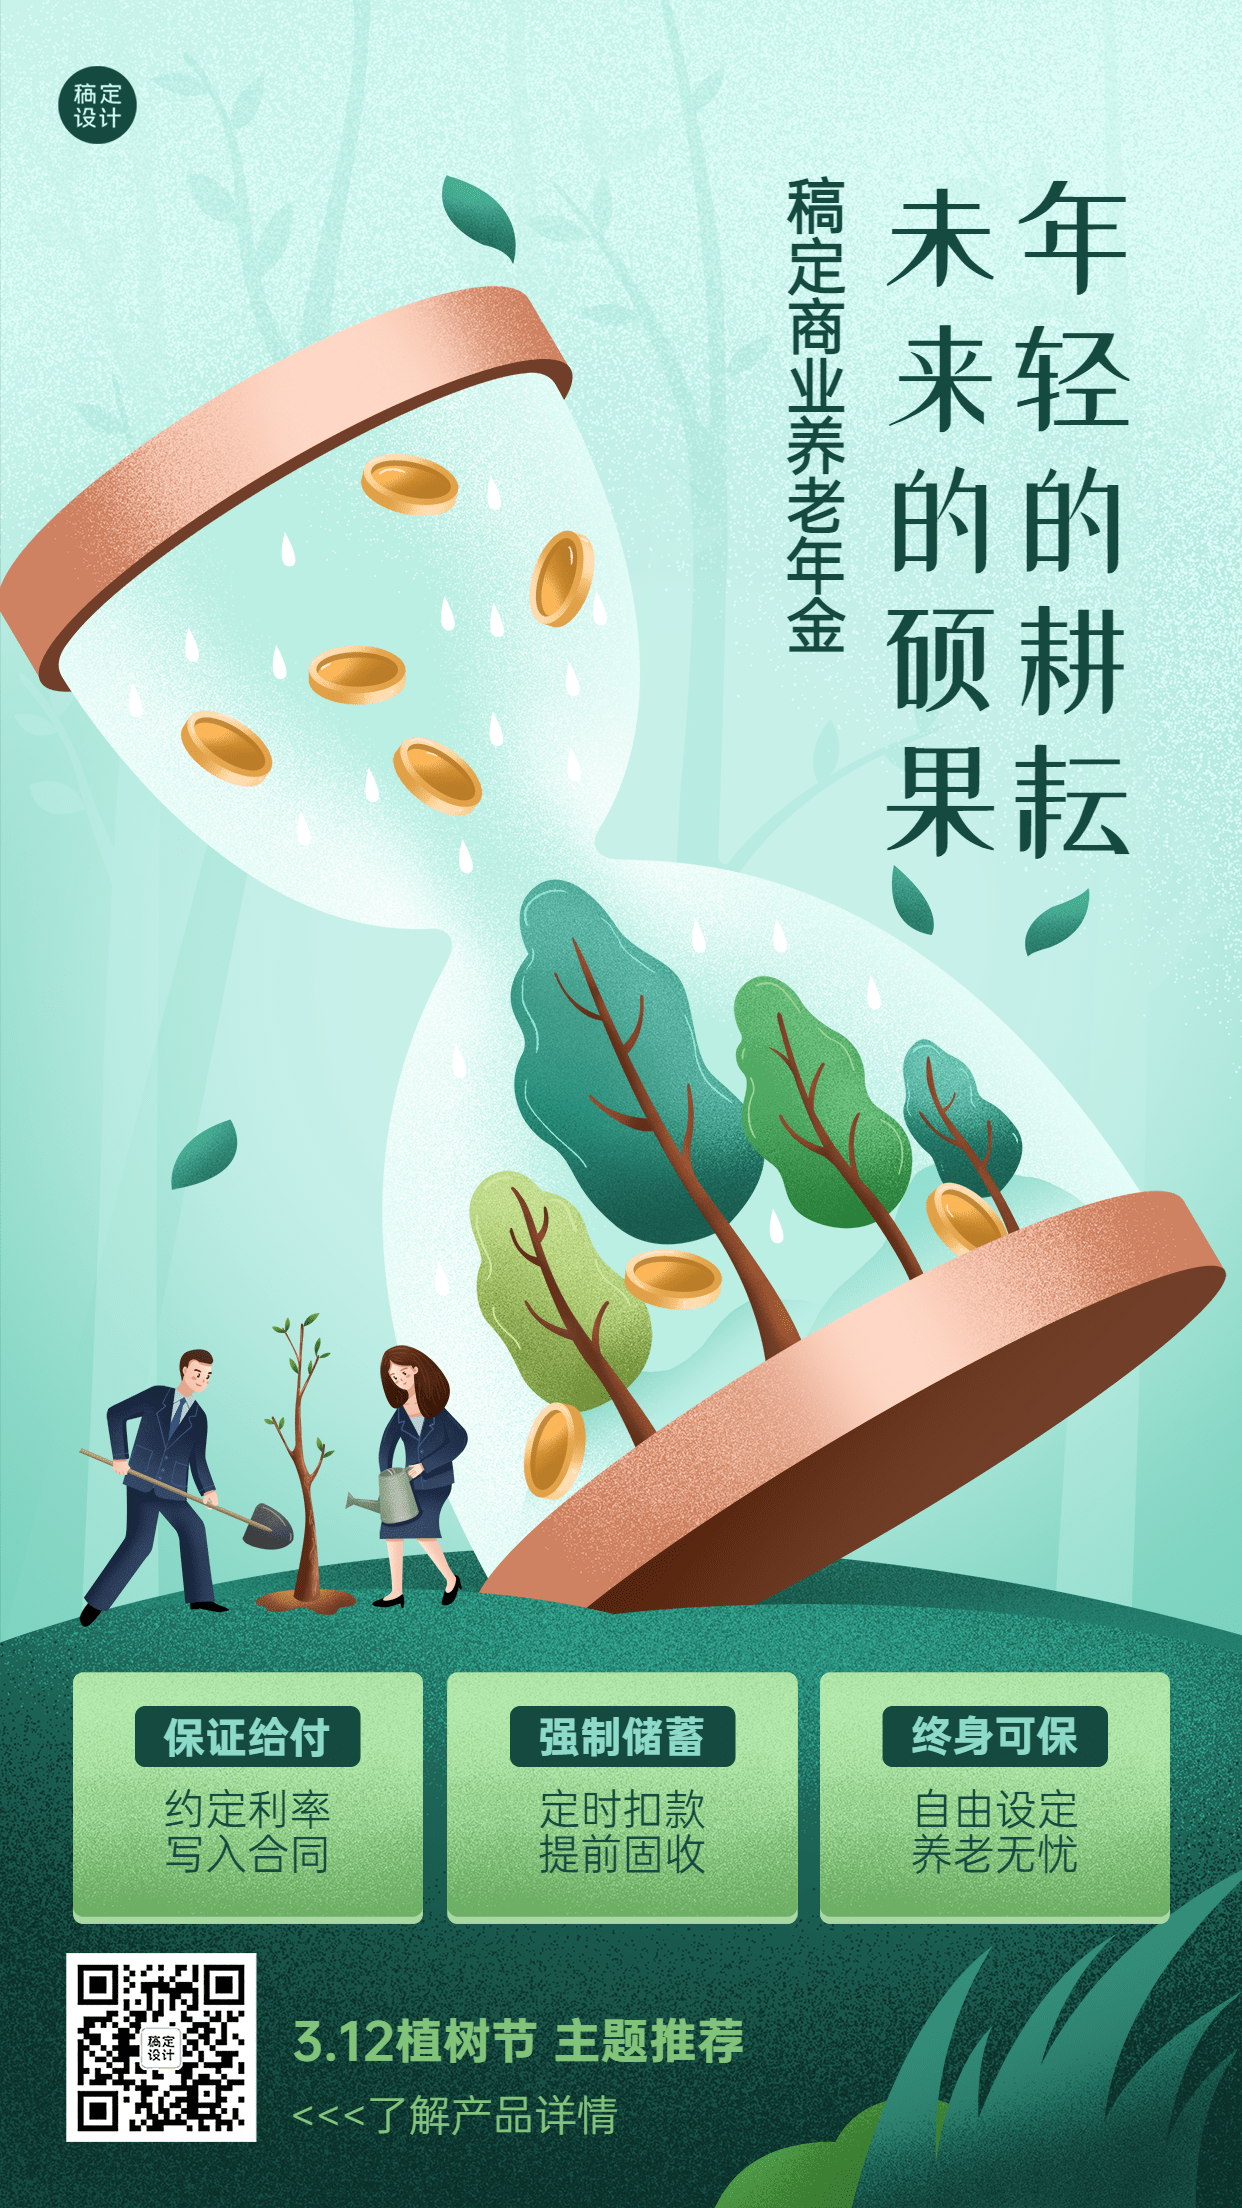 植树节金融保险节日产品营销宣传插画海报